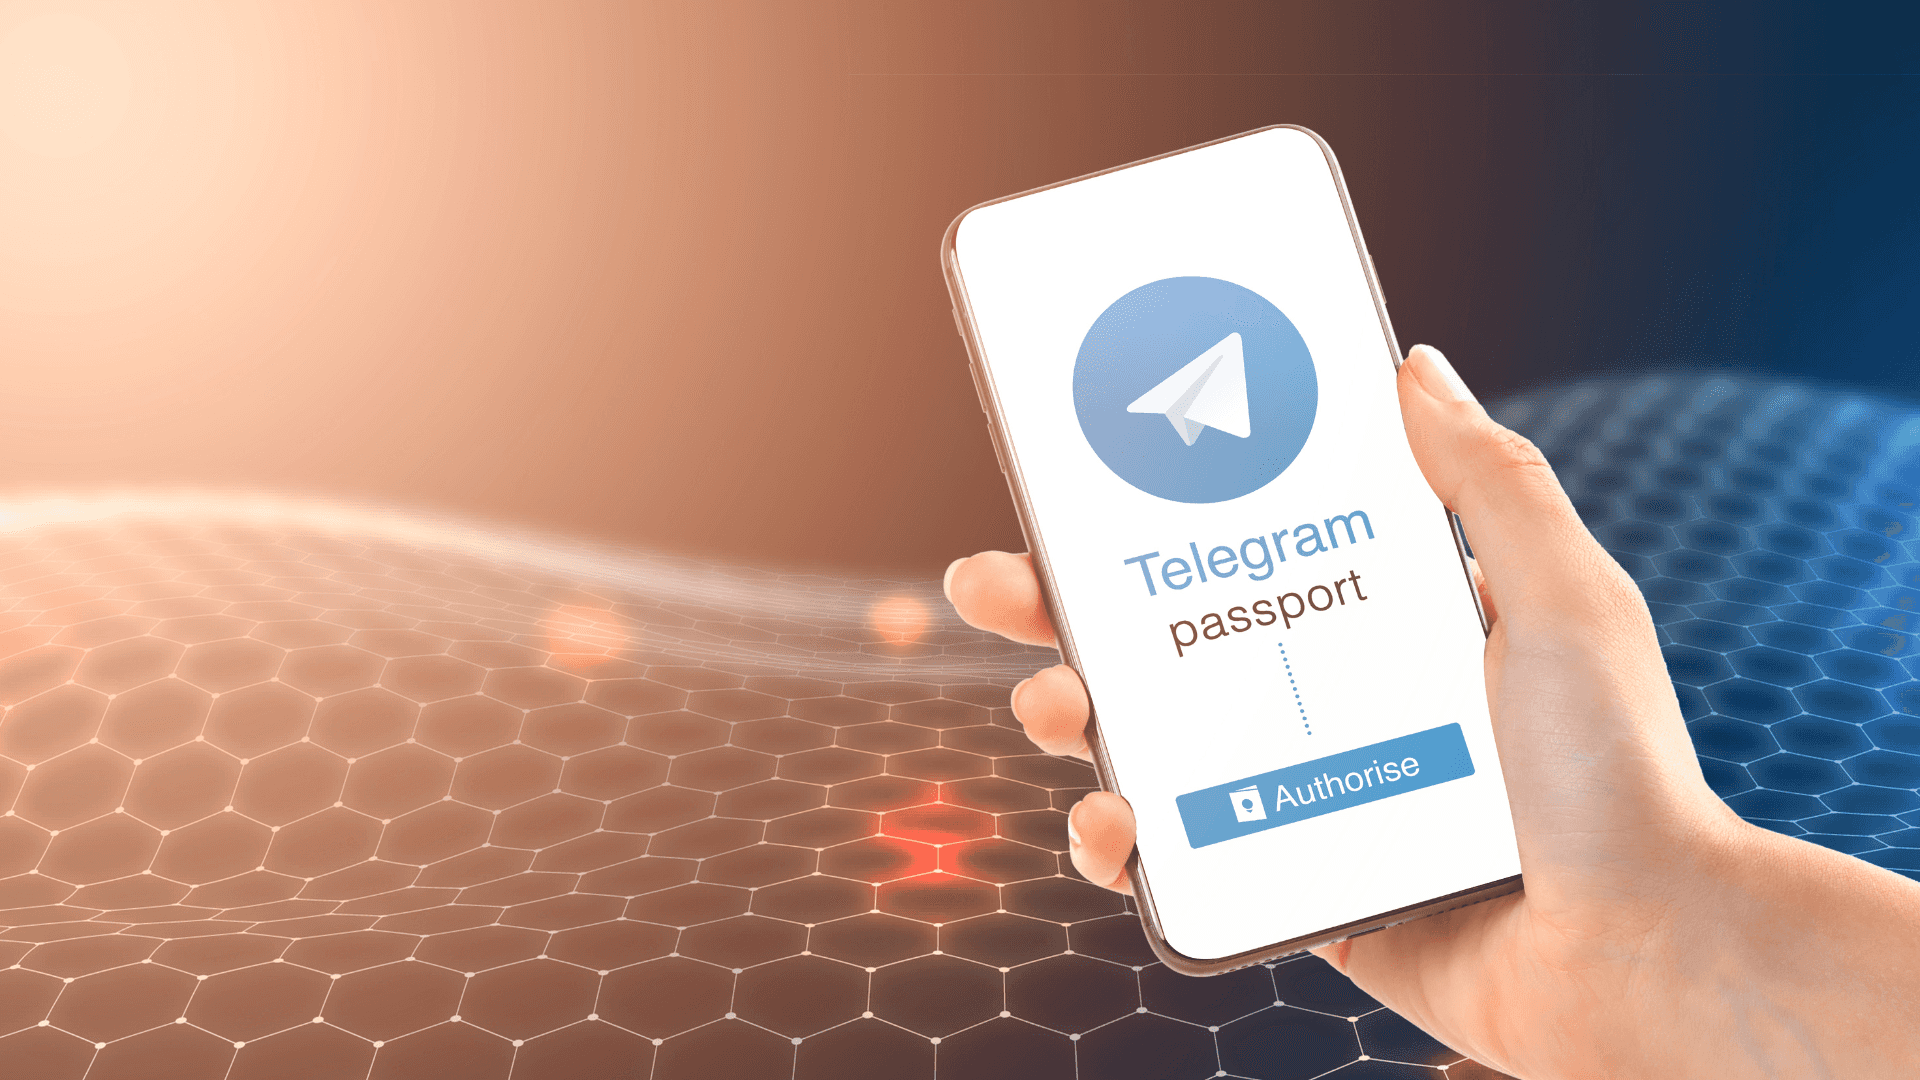 Enhånd Der Holder En Smartphone Med En Telegram-app På Den.